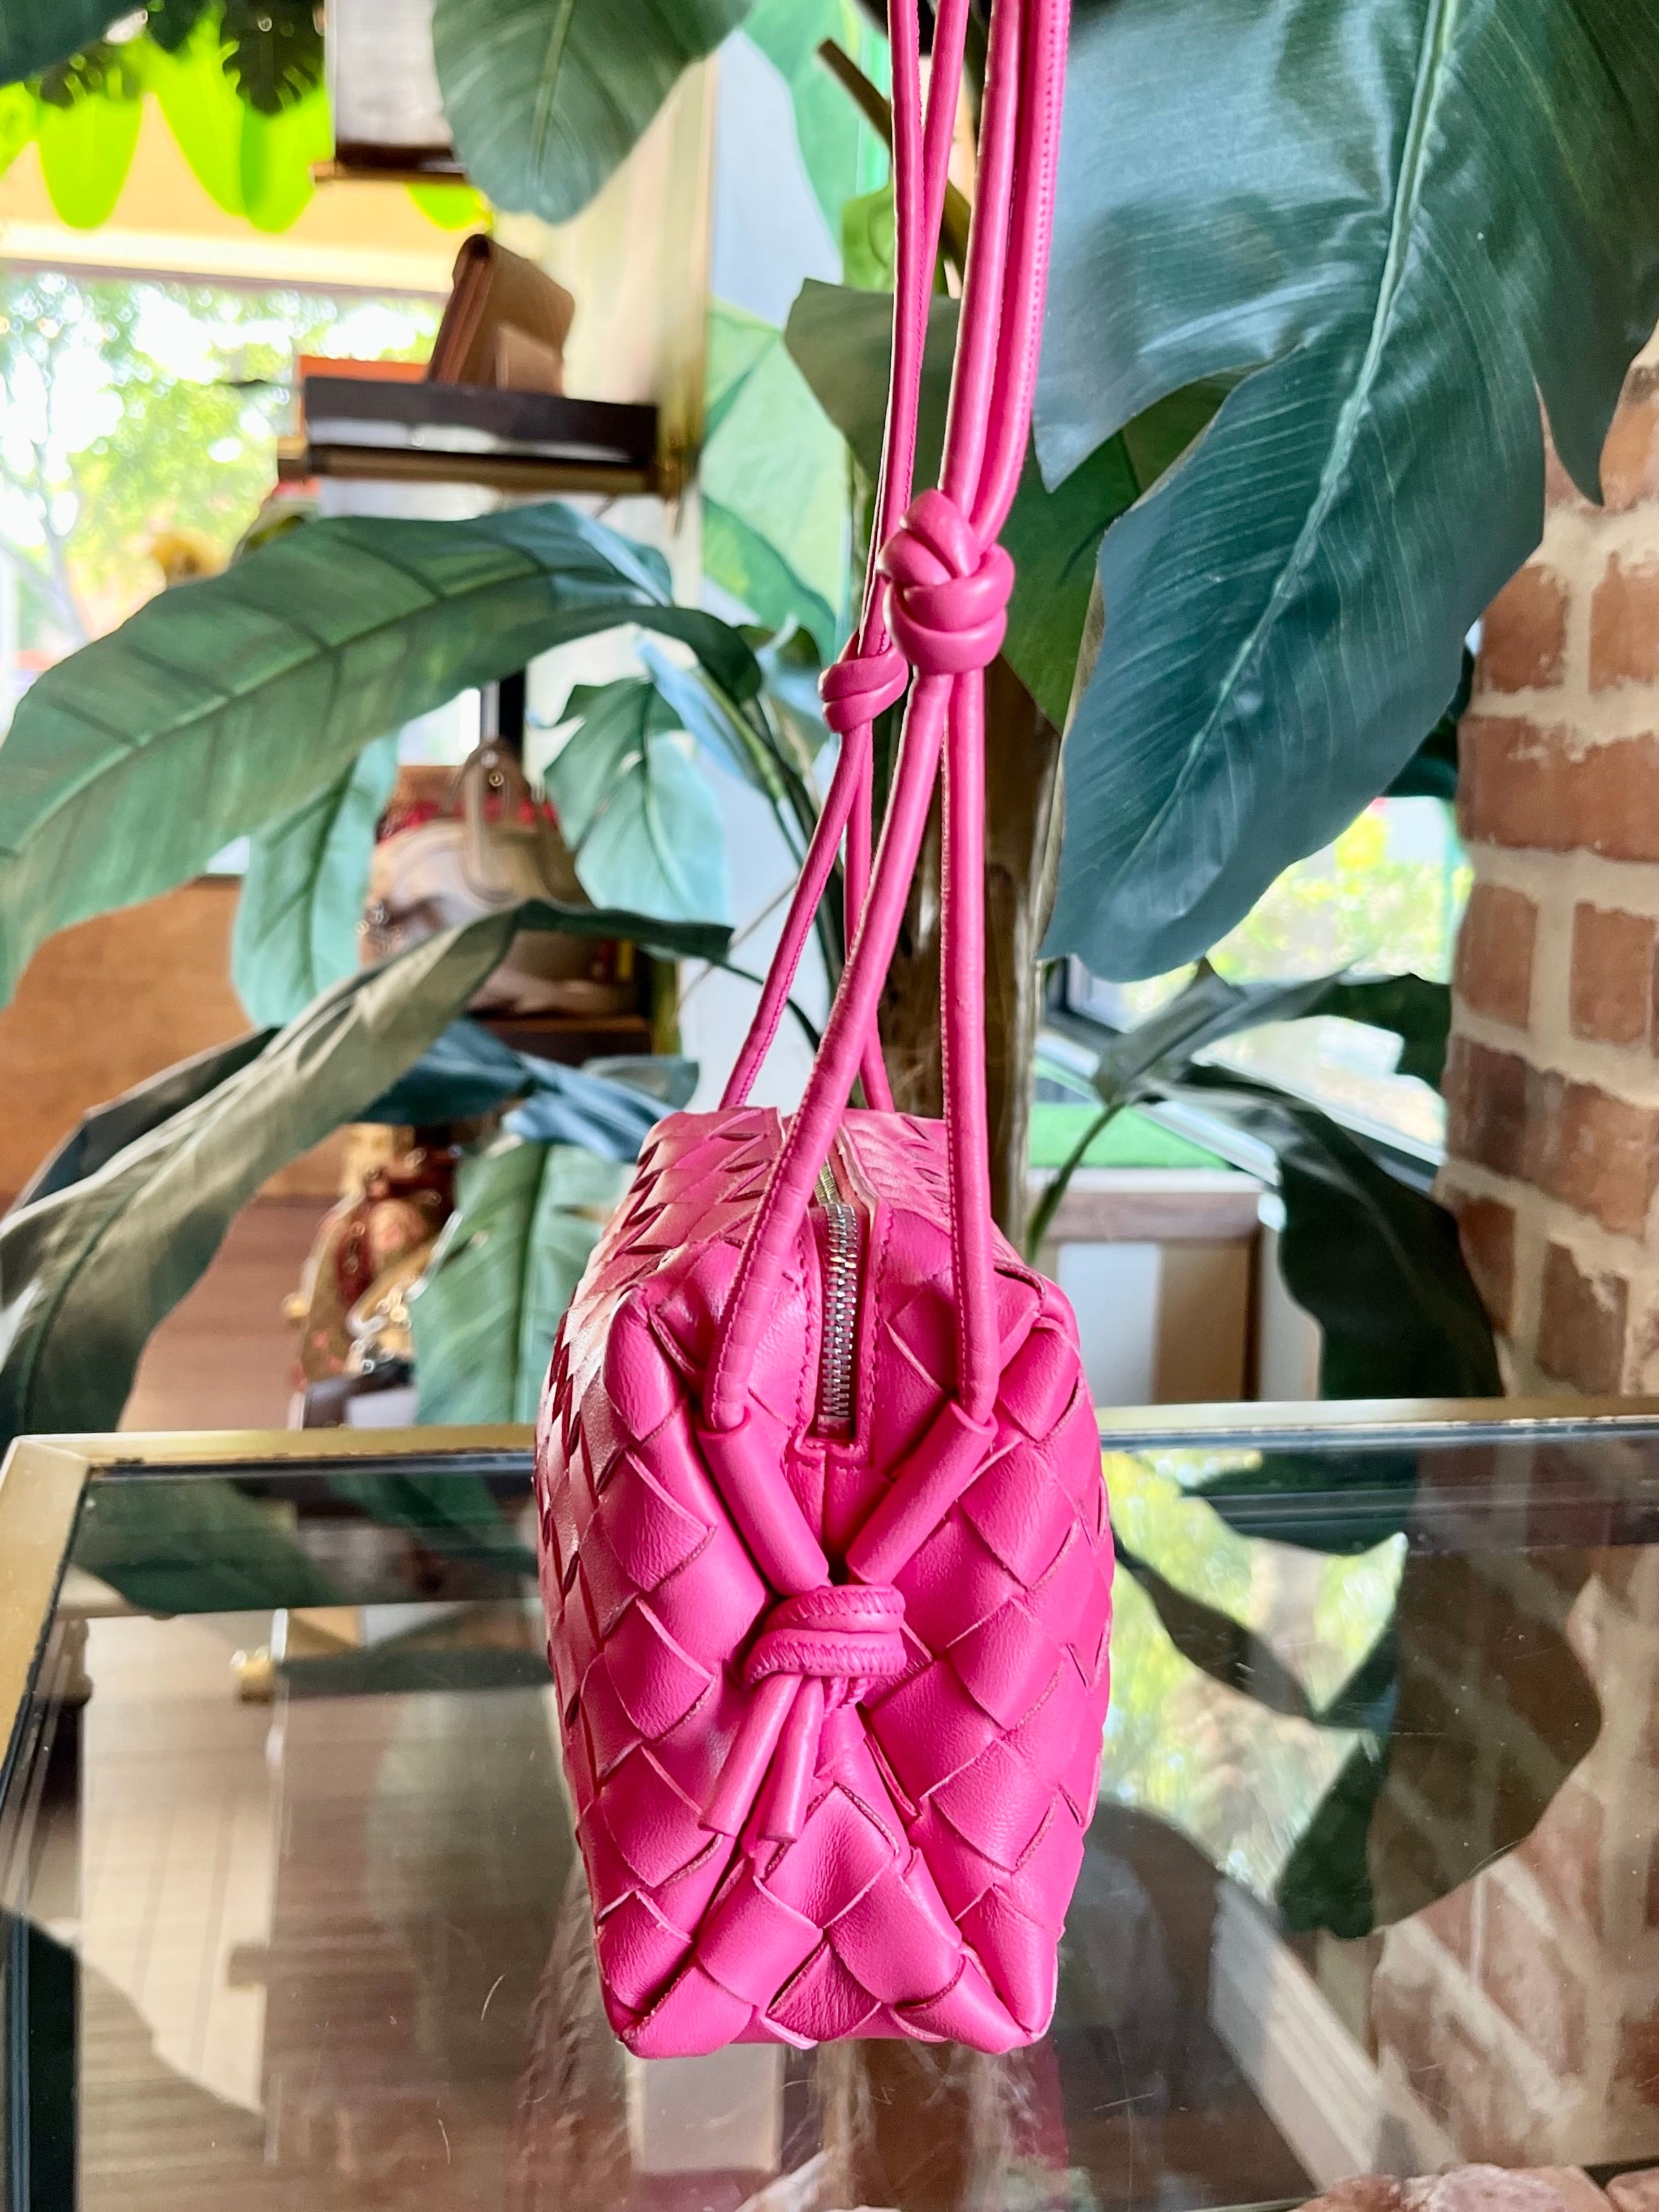 Bottega Veneta Mini Loop Camera Bag in Pink